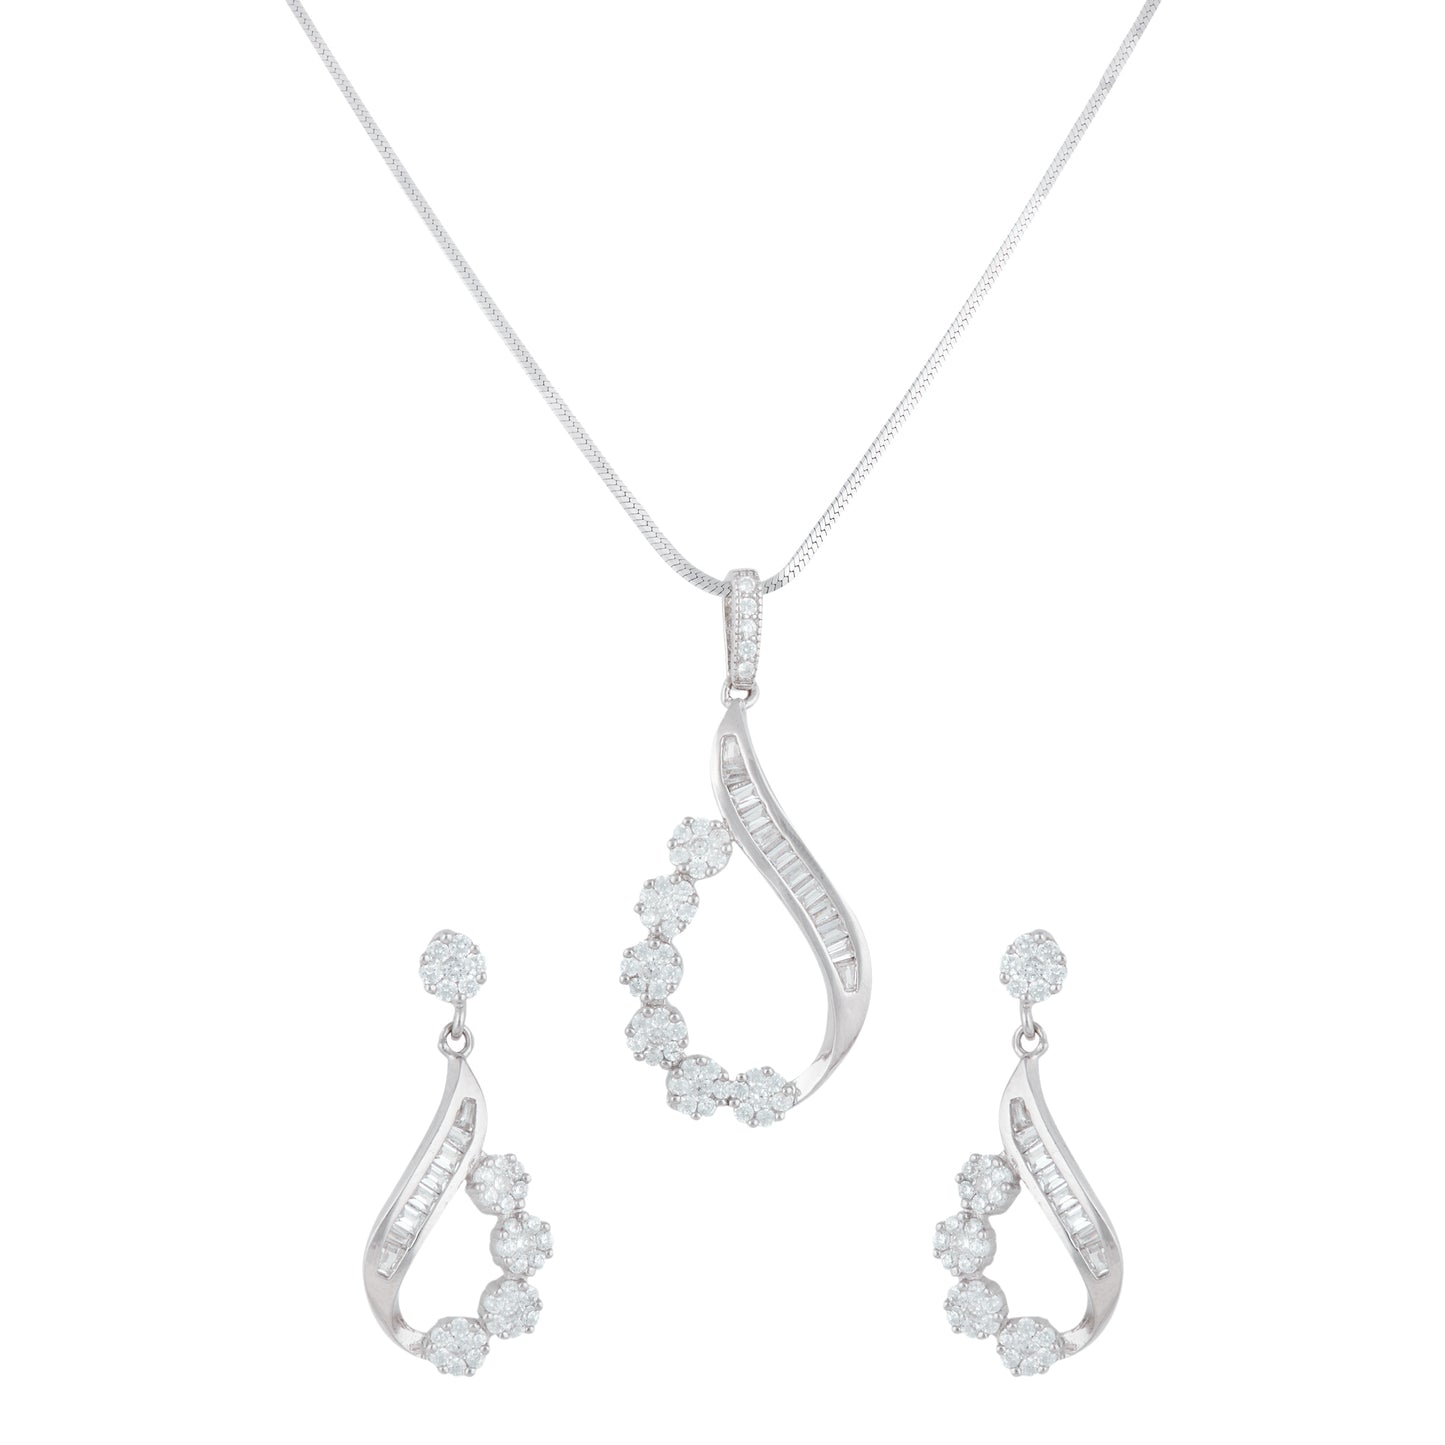 Silver Zircon Dazzle Necklace Set